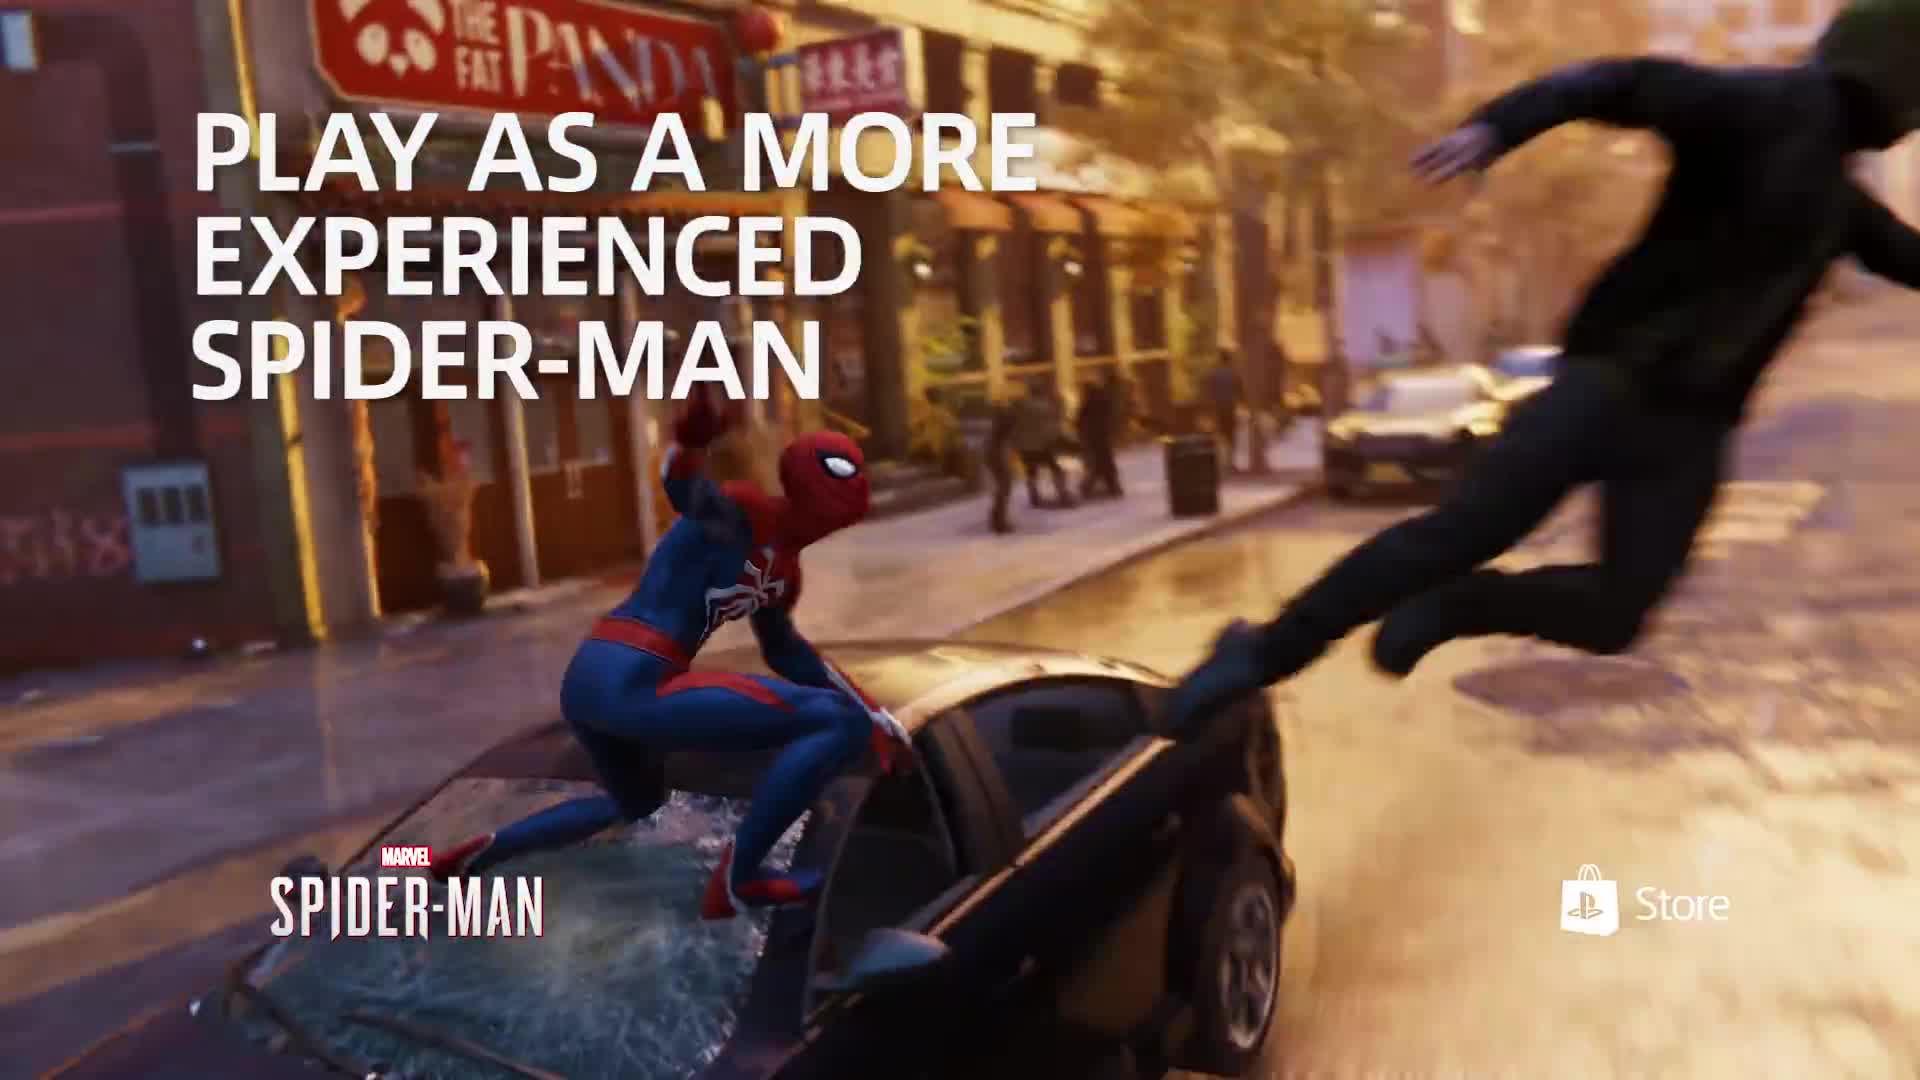 Marvels Spider-Man u odpotava posledn hodiny do vydania